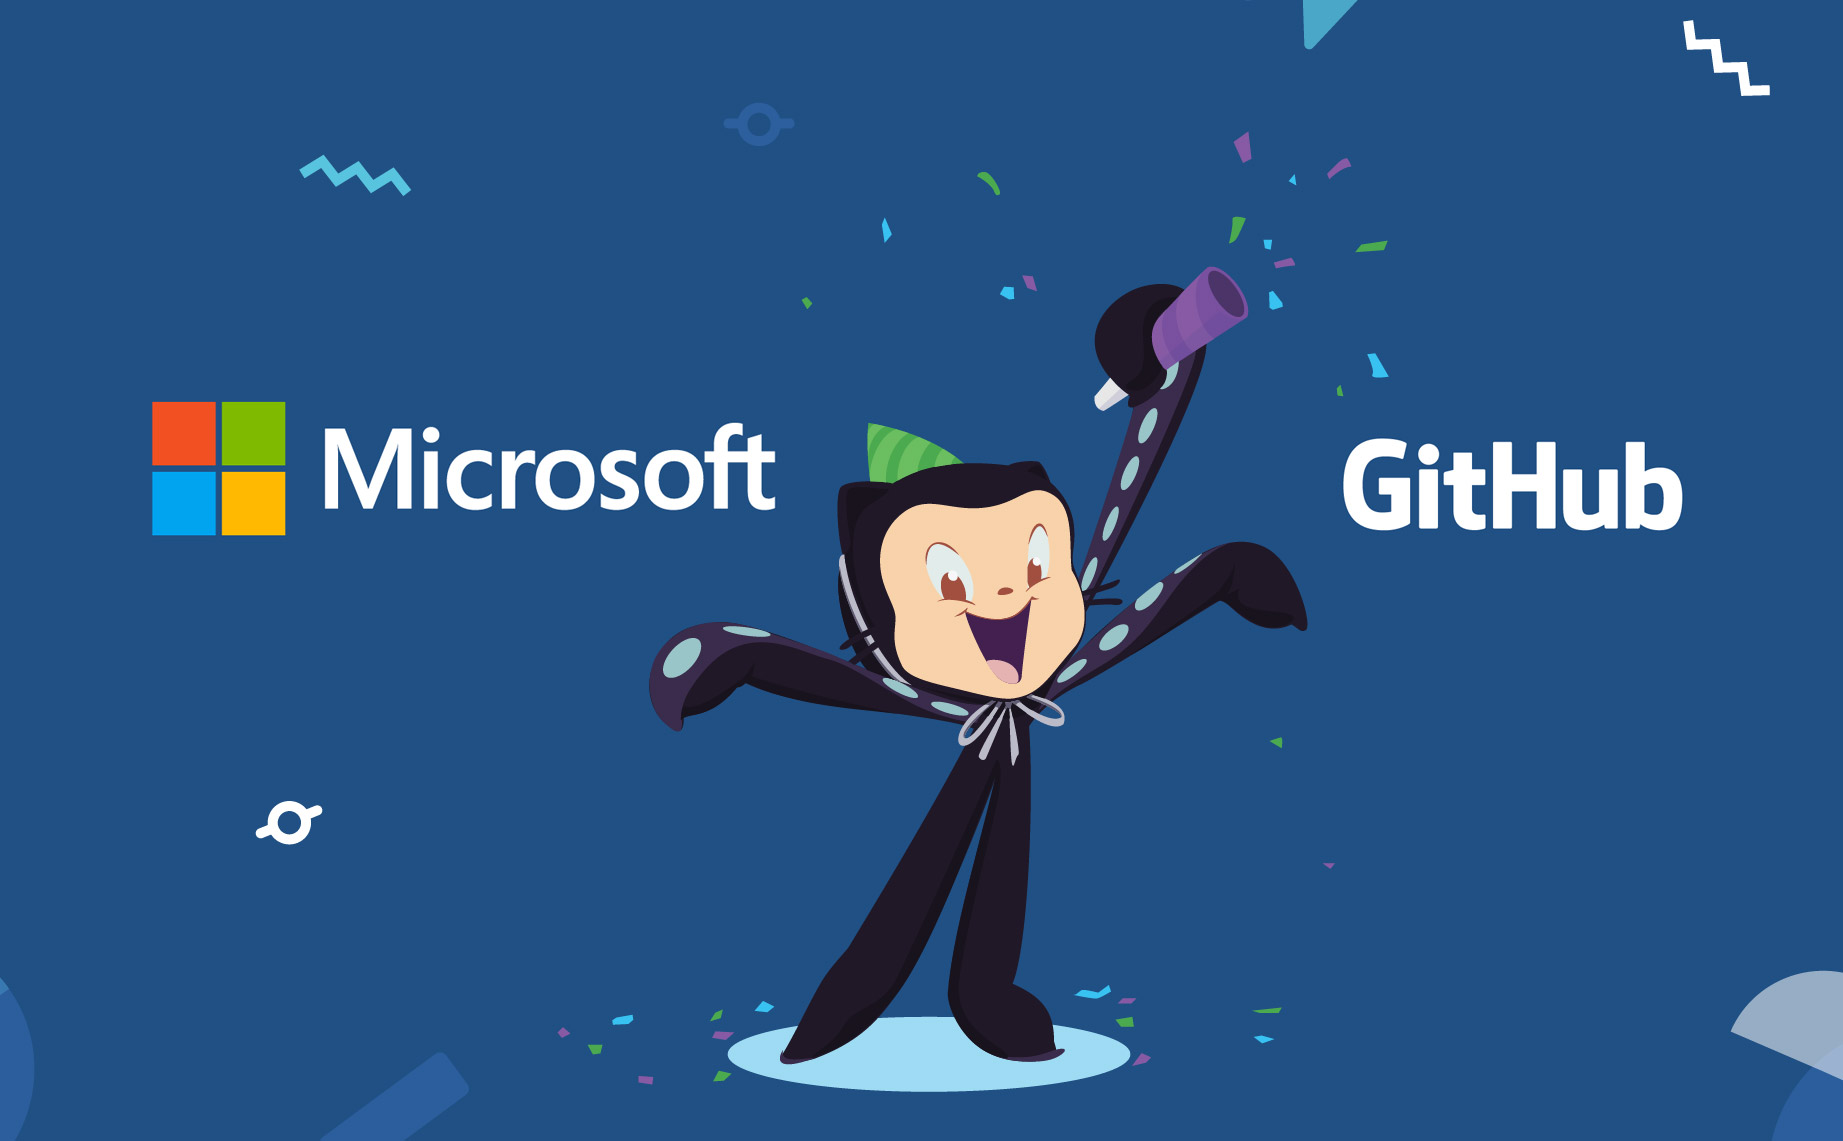 Microsoft xác nhận mua GitHub với giá 7,5 tỉ USD, sẽ giữ cho GitHub hoạt động độc lập